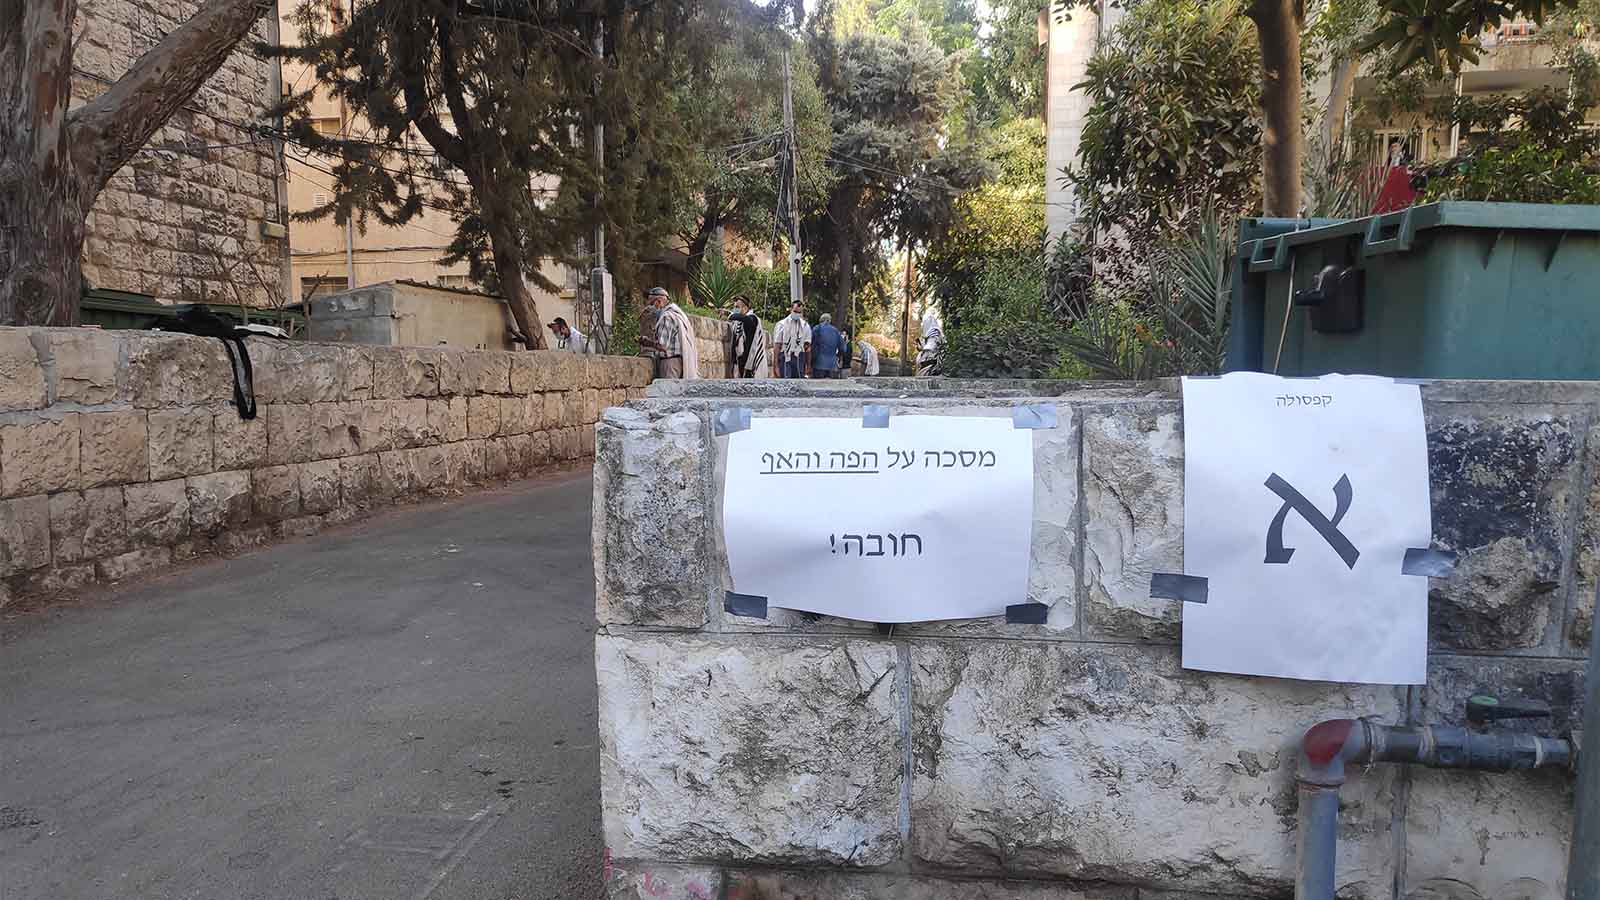 סמטה סמוכה לבית הכנסת טרנטו בנחלאות, שבה נערכות התפילות. (צילום: דוד טברסקי)